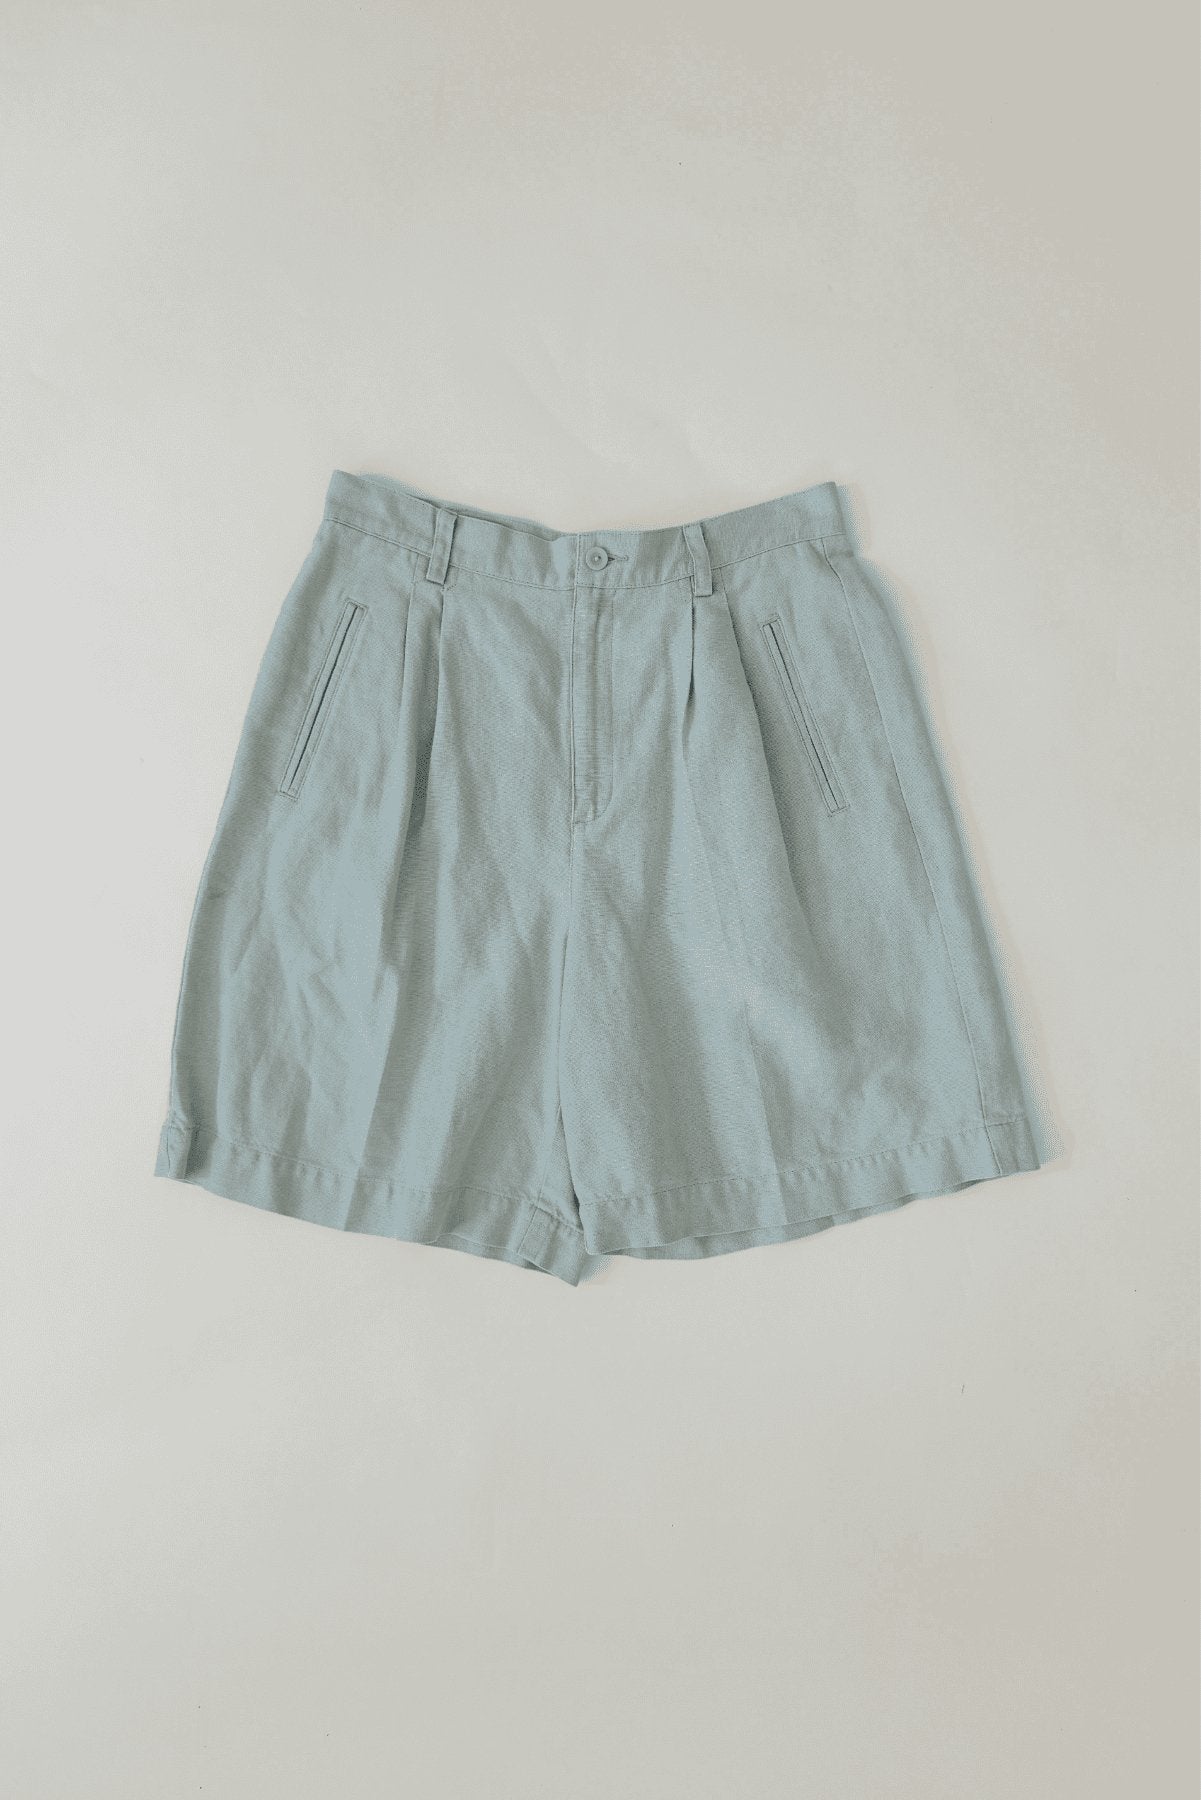 2000s Vintage Linen Cotton Liz Claiborne Lizsport Light Blue High Waist Shorts Size 10 - oh-eco